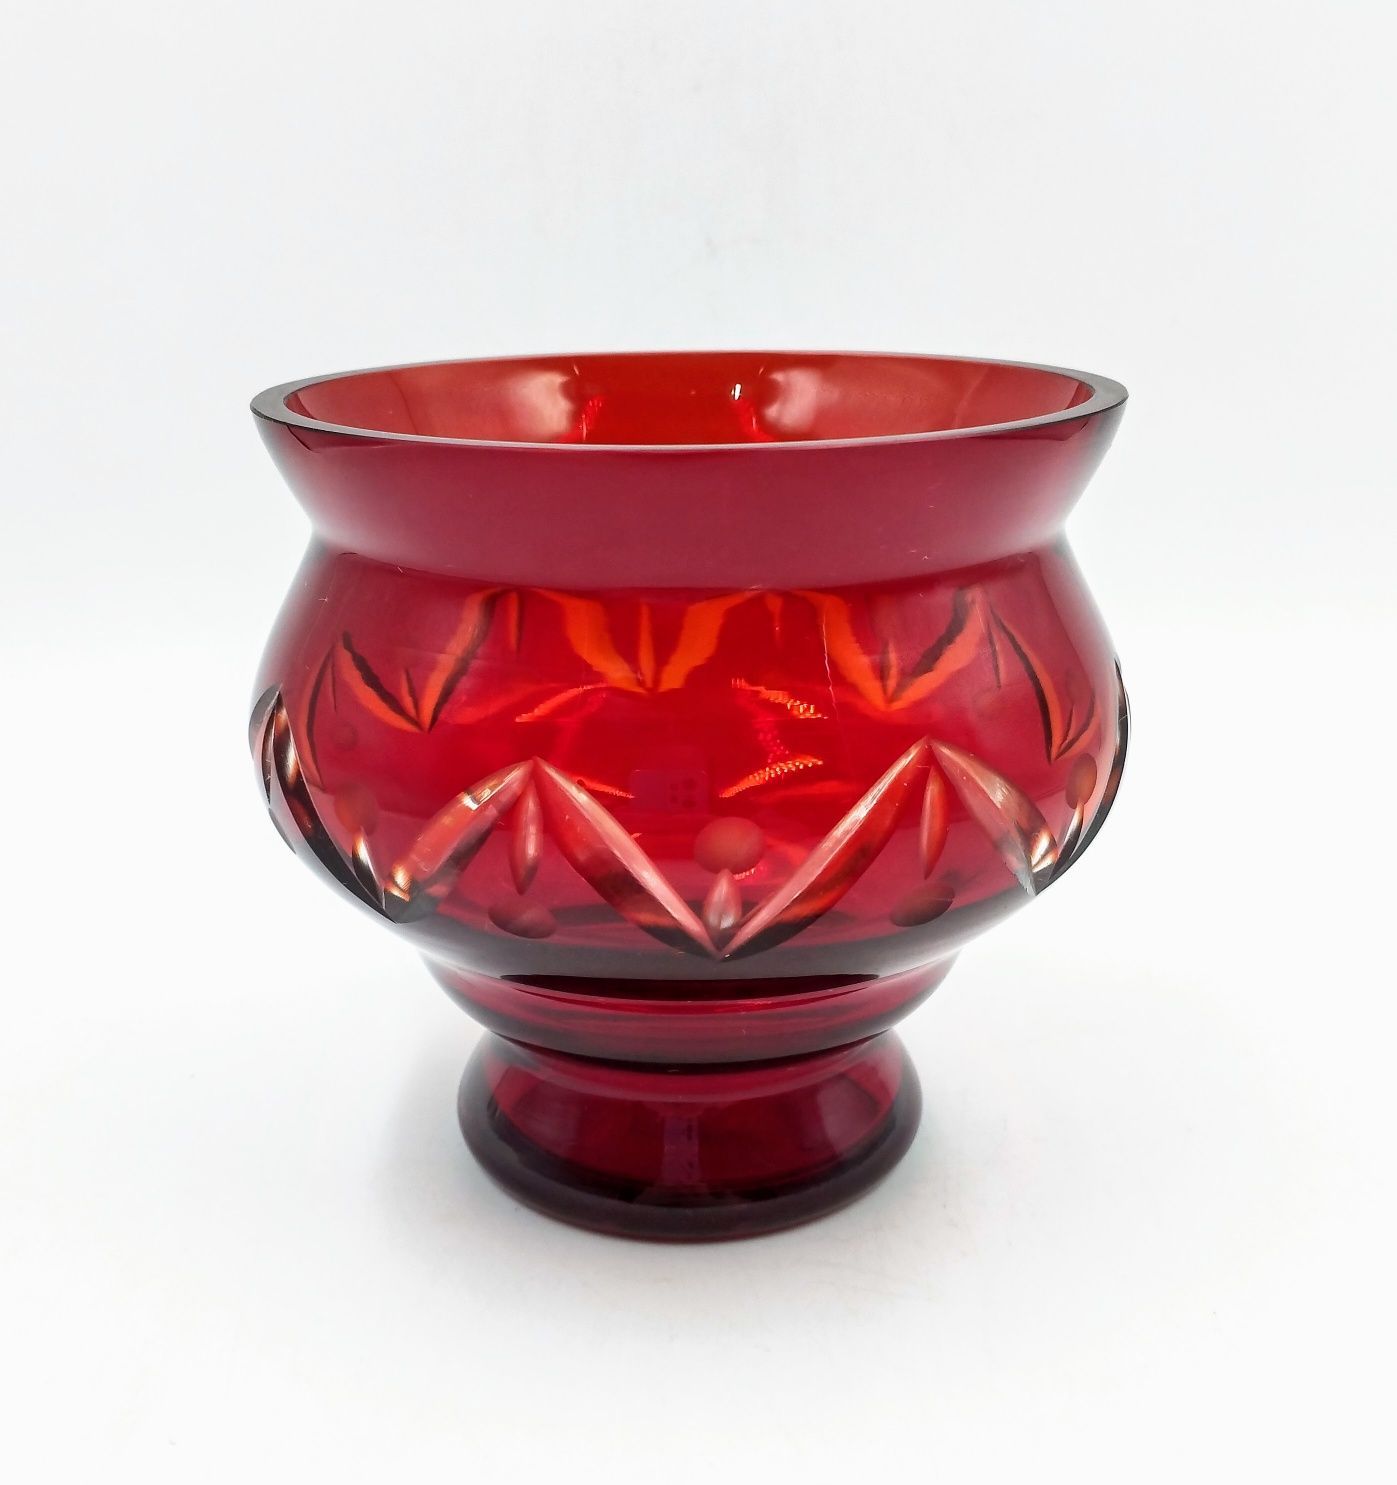 Pucharek kryształ szkło warstwowe rubinowe antyk retro design vintage